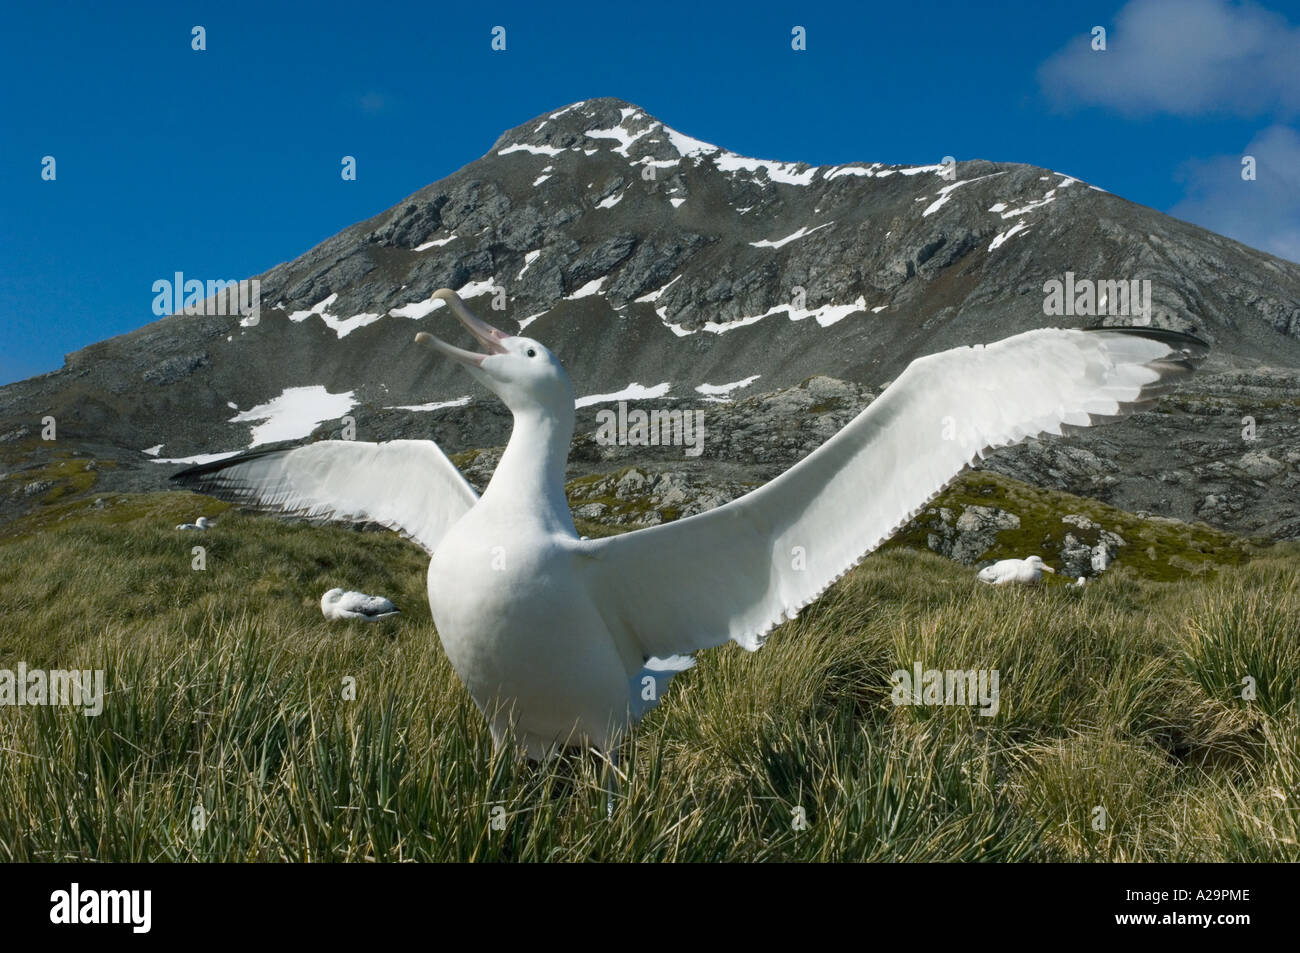 Альбатрос м5. Странствующий Альбатрос. Альбатрос картинки. Самая большая птица в мире летающая Альбатрос.